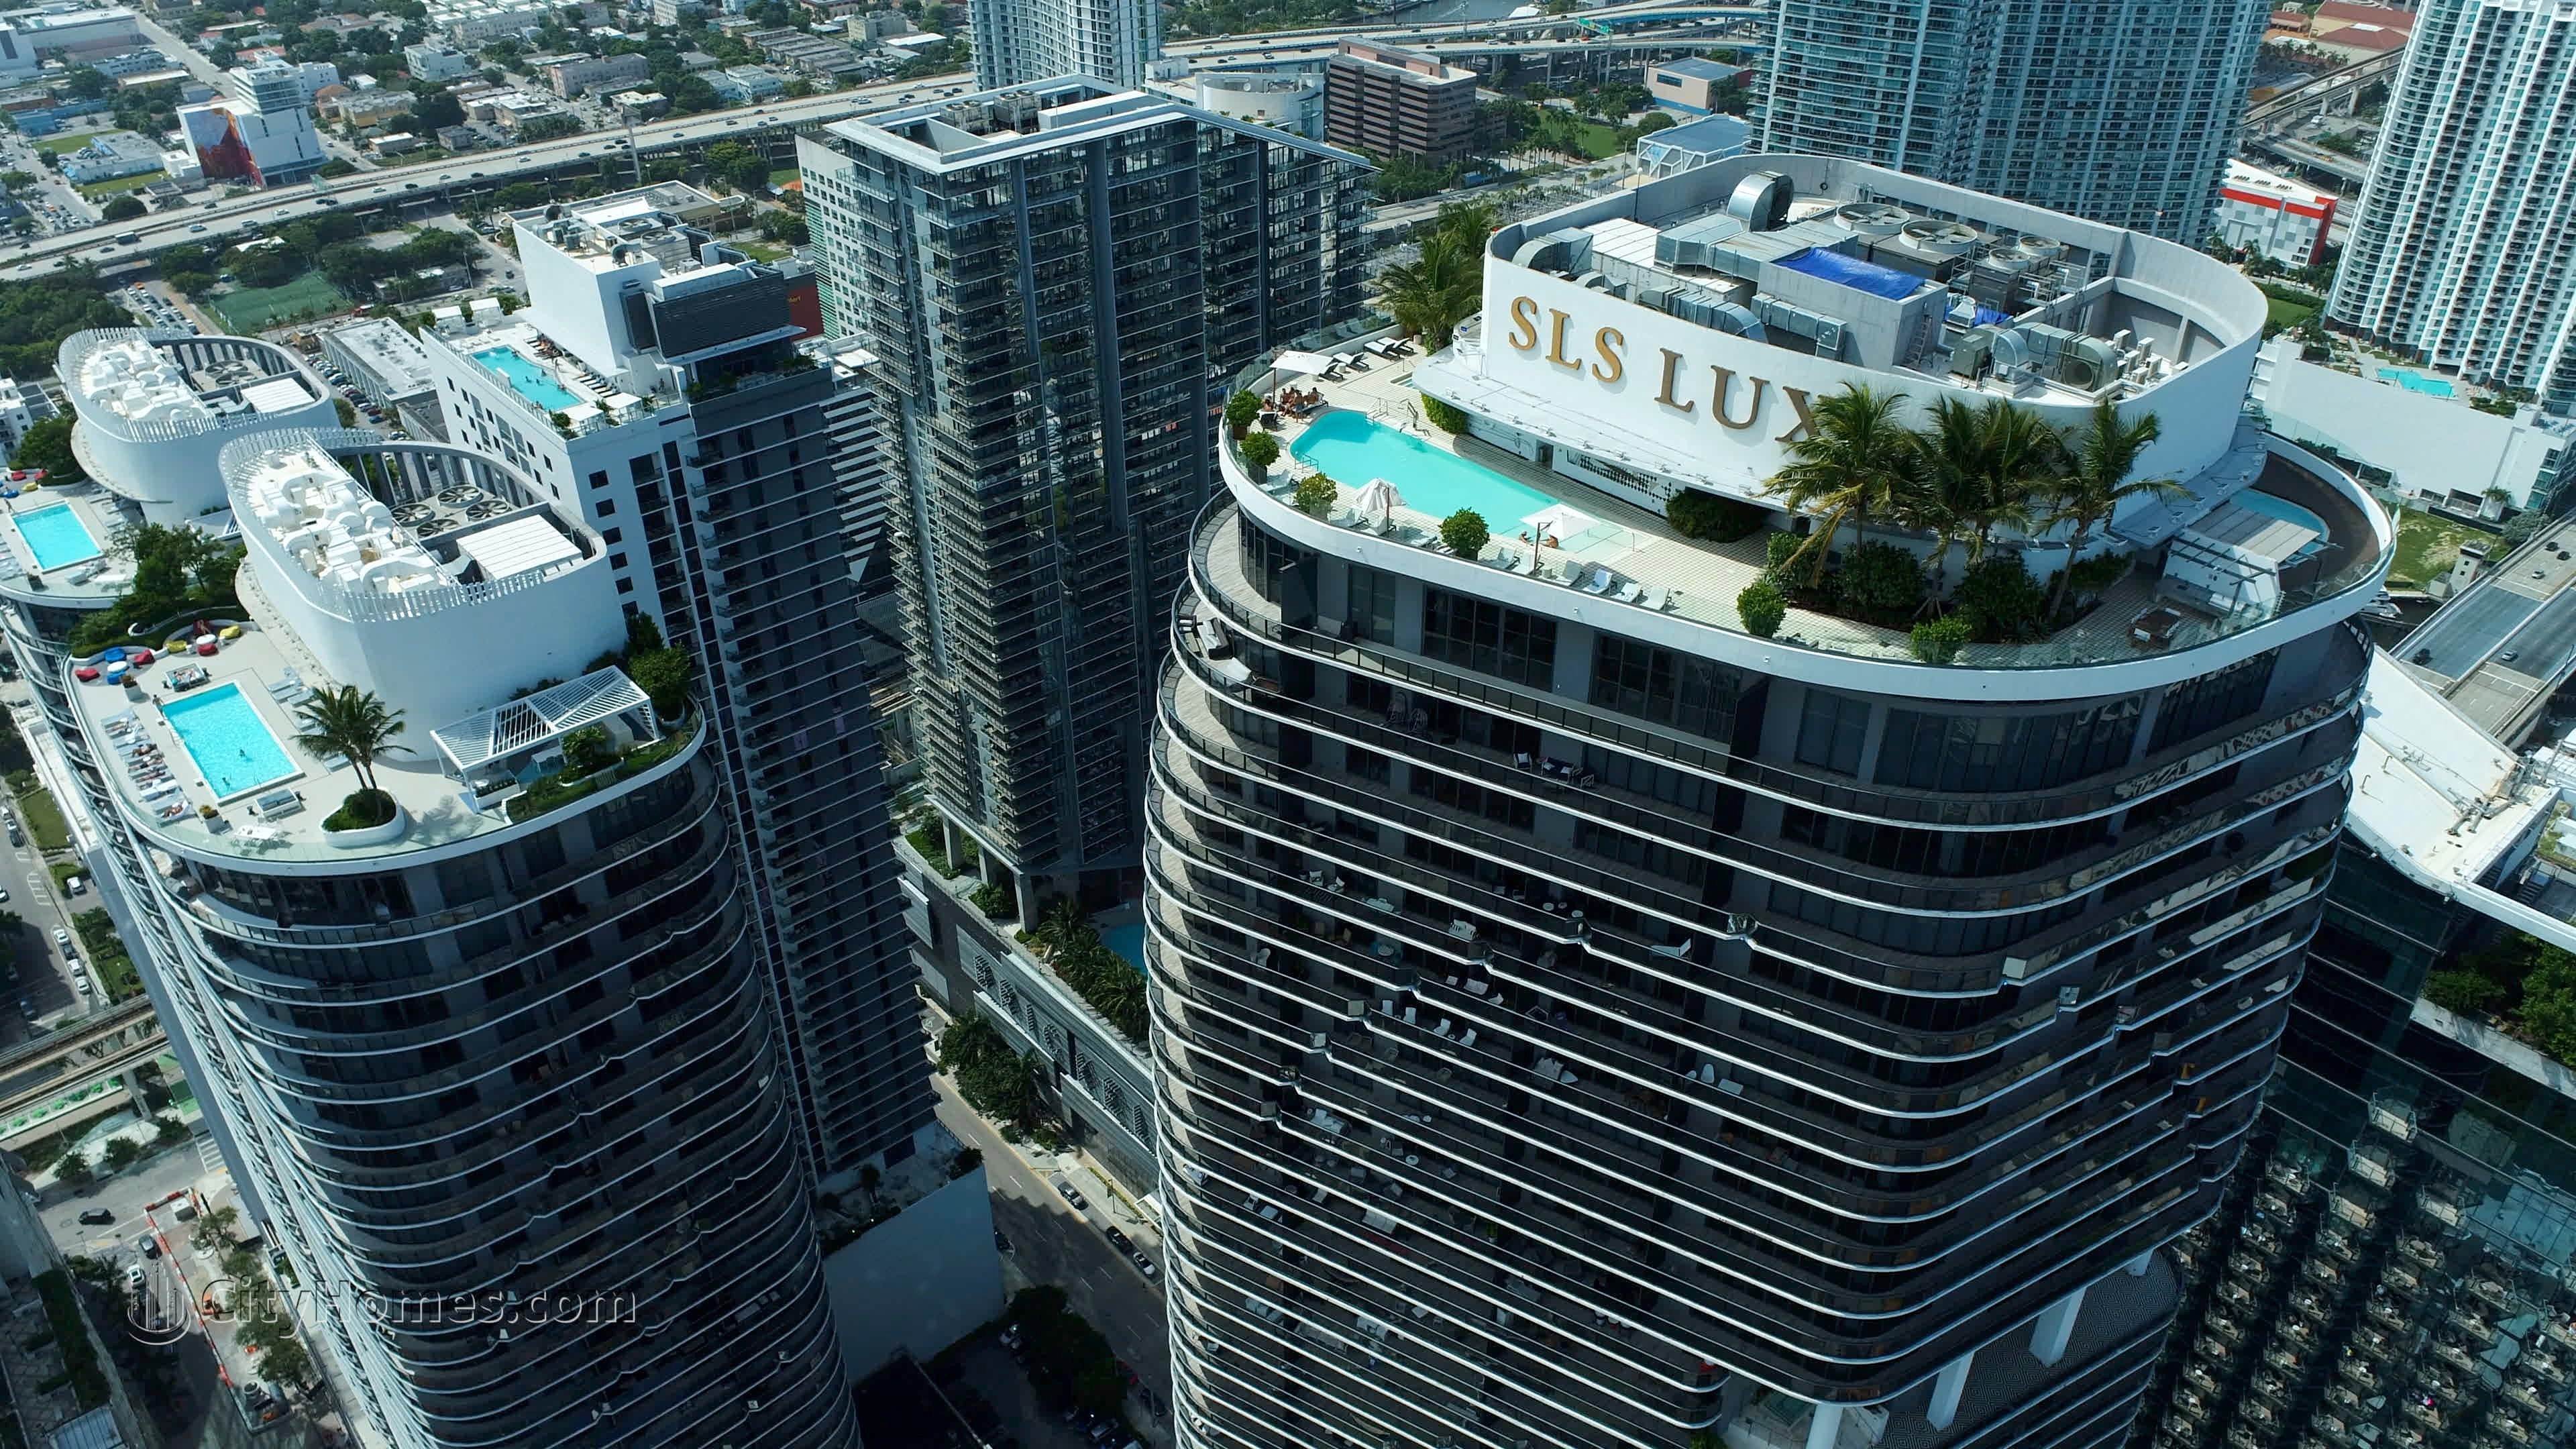 3. SLS Lux edificio a 801 S Miami Avenue, Miami, FL 33139